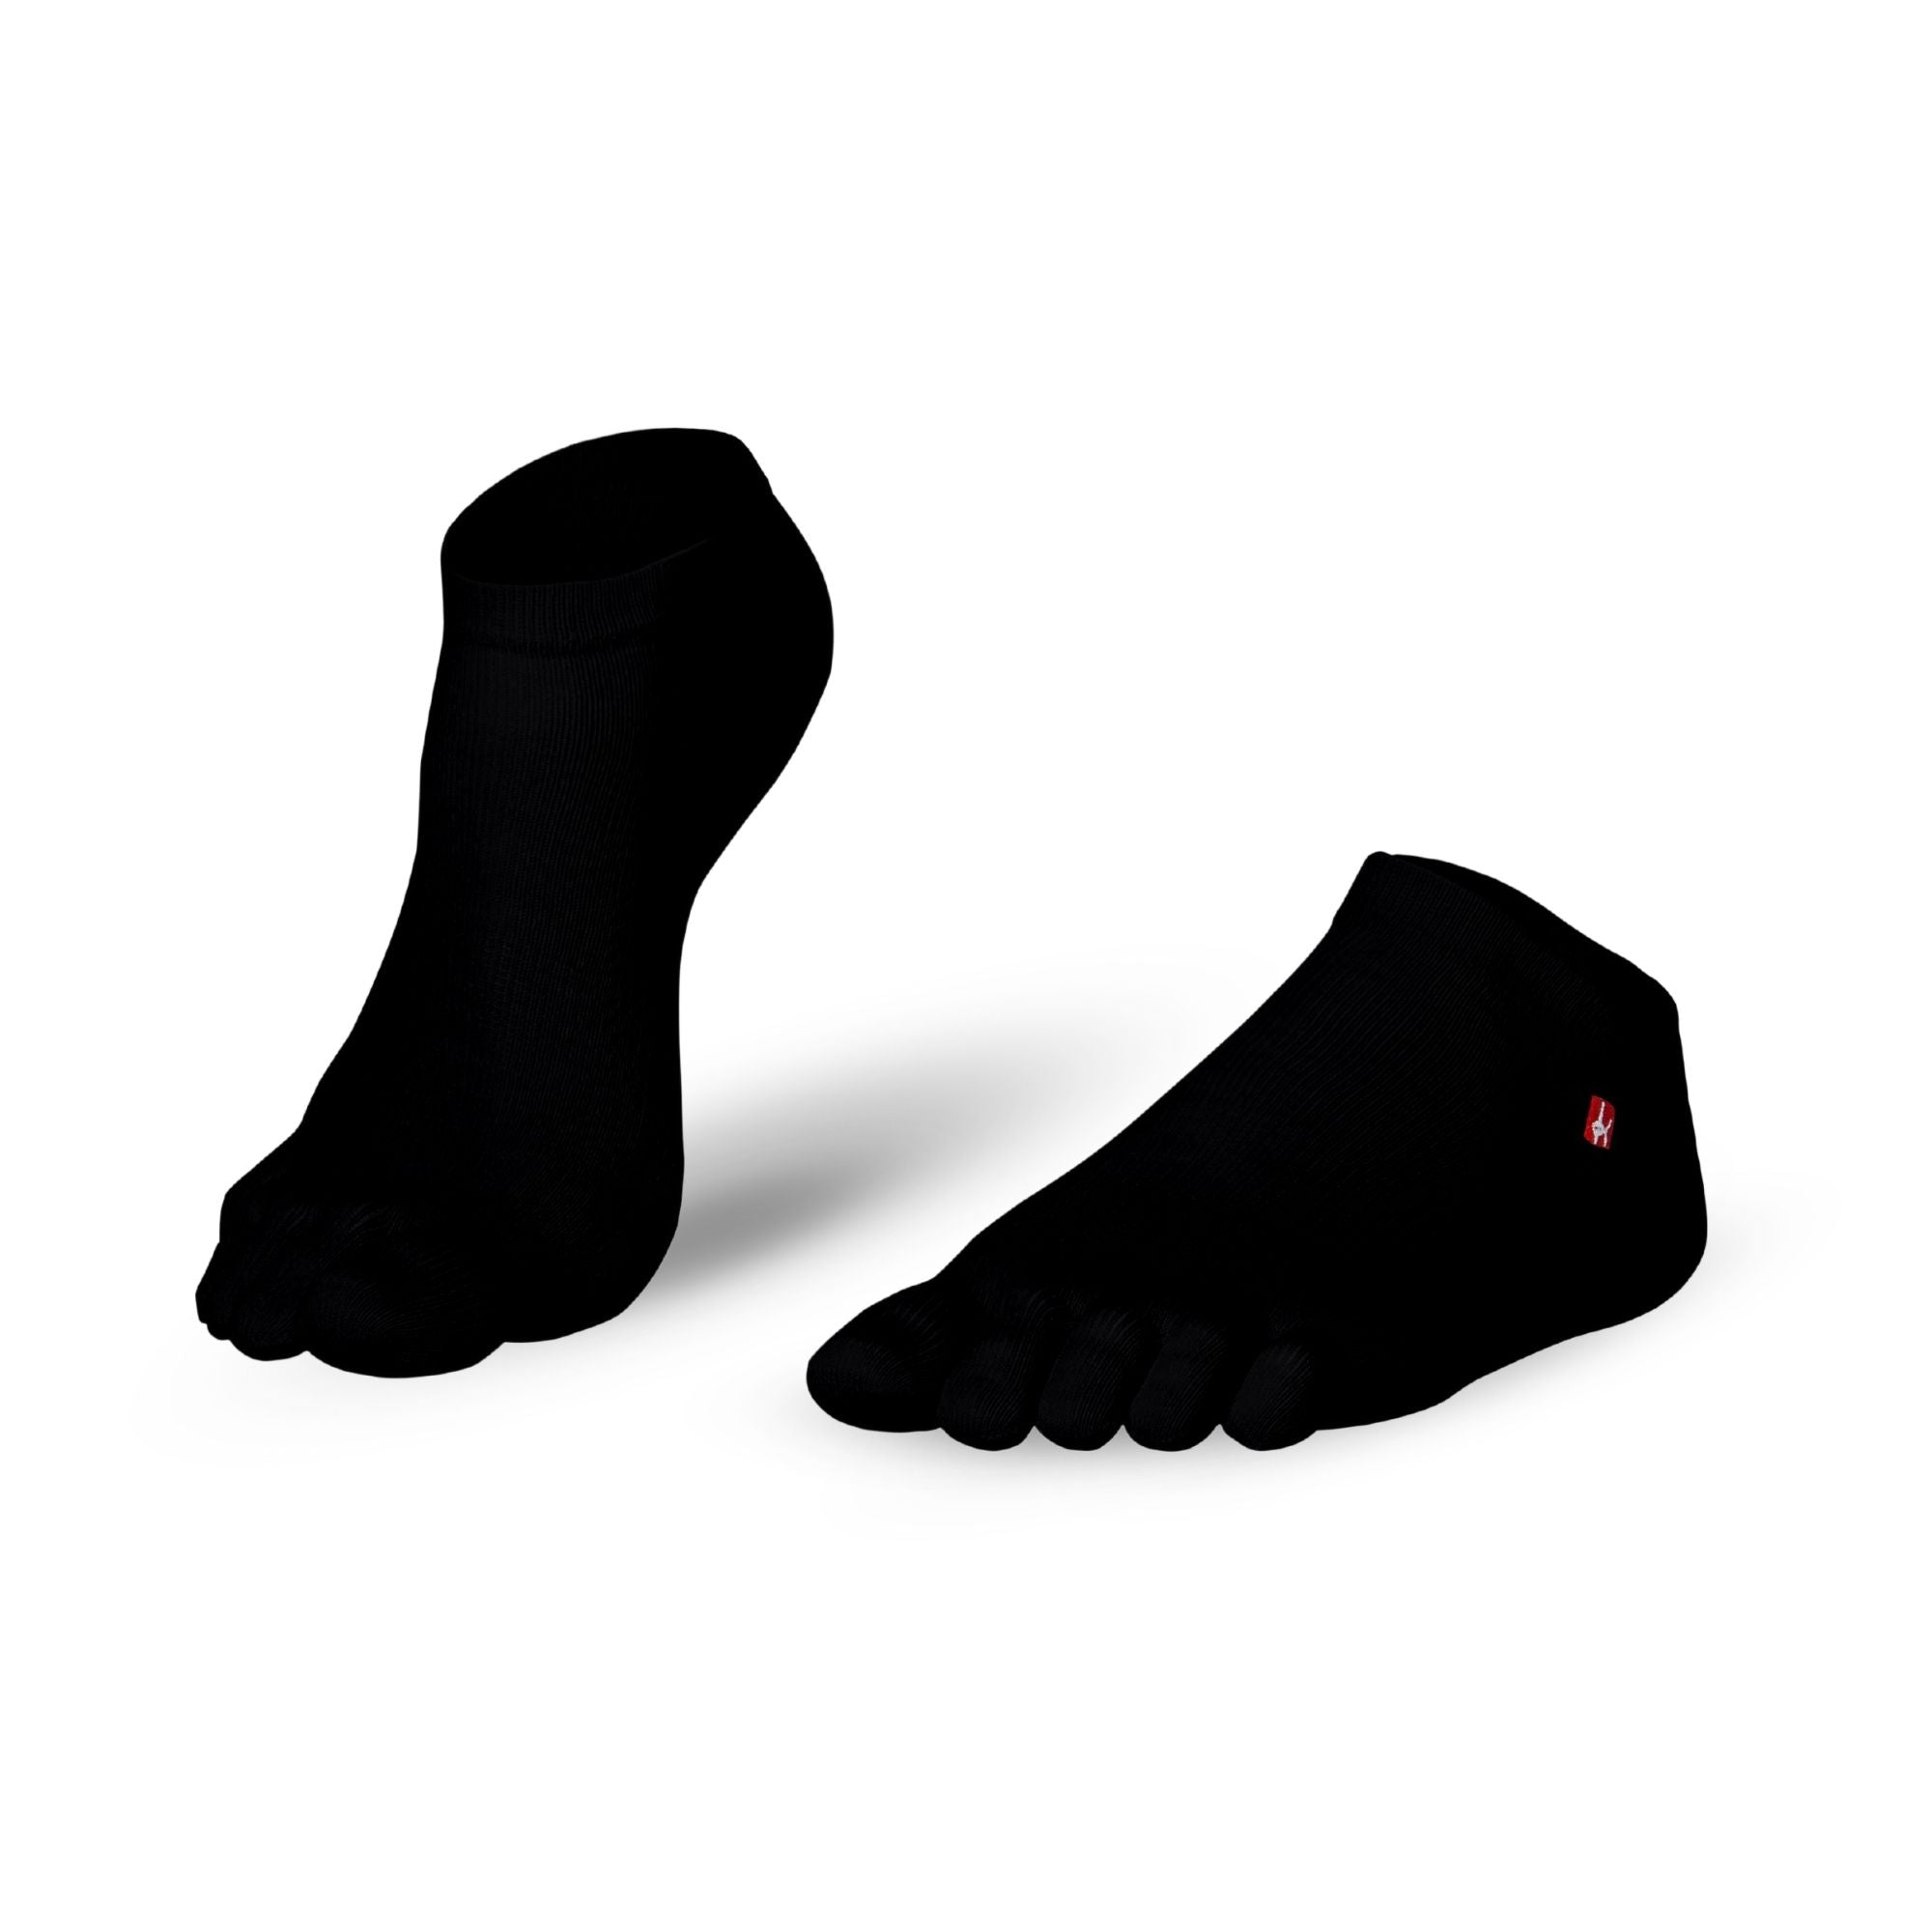 Prstne nogavice Coolmax Sneaker by Knitido Track & Trail ultralite fresh v črni barvi